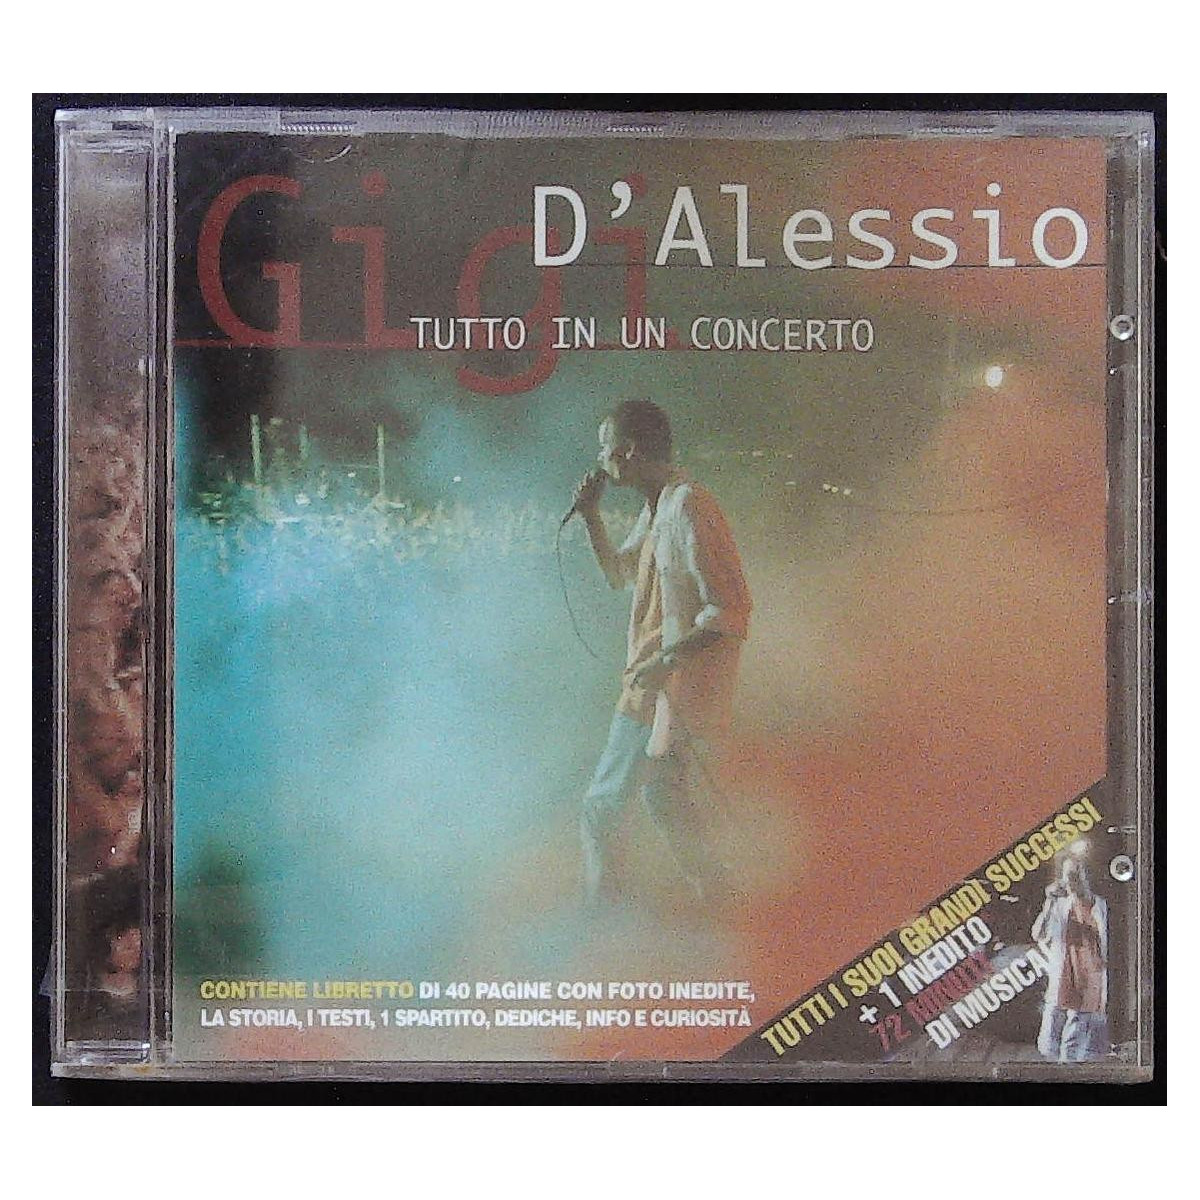 https://erecord.it/56022-Ebay-Image/gigi-d-alessio-cd-tutto-in-un-concerto-bmg-74321628902-sigillato.jpg